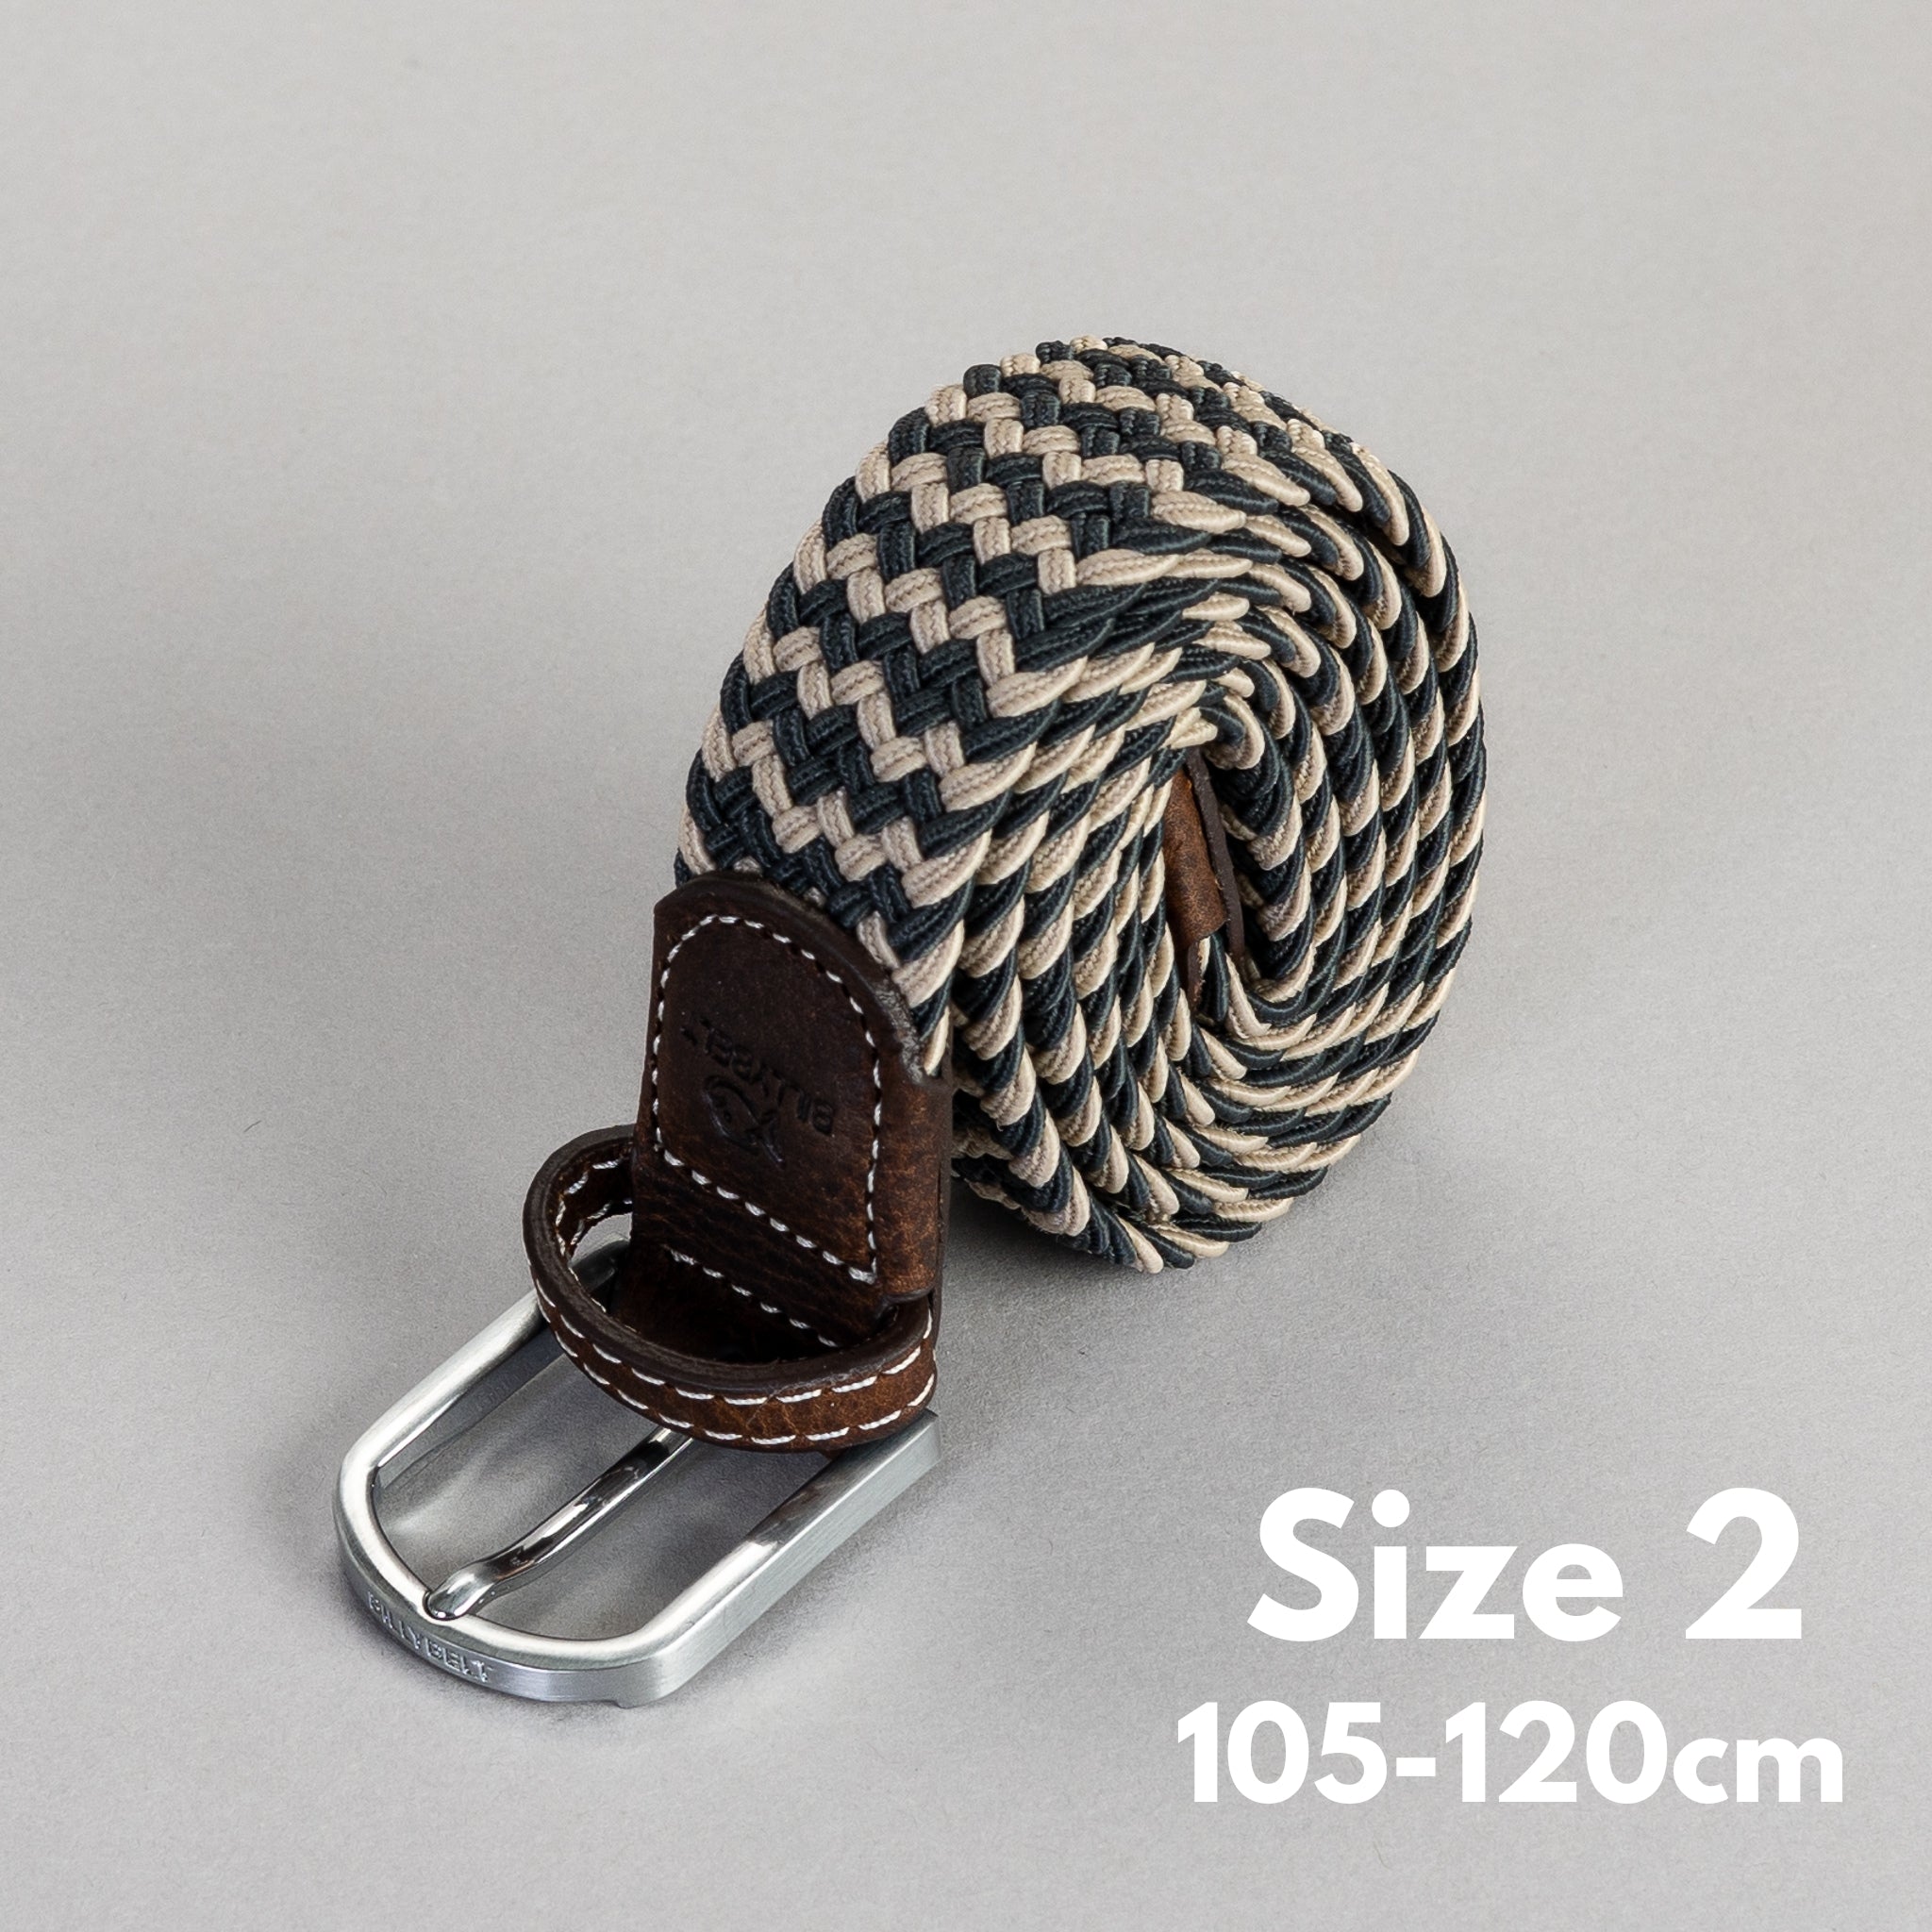 The Havana Woven elastic belt